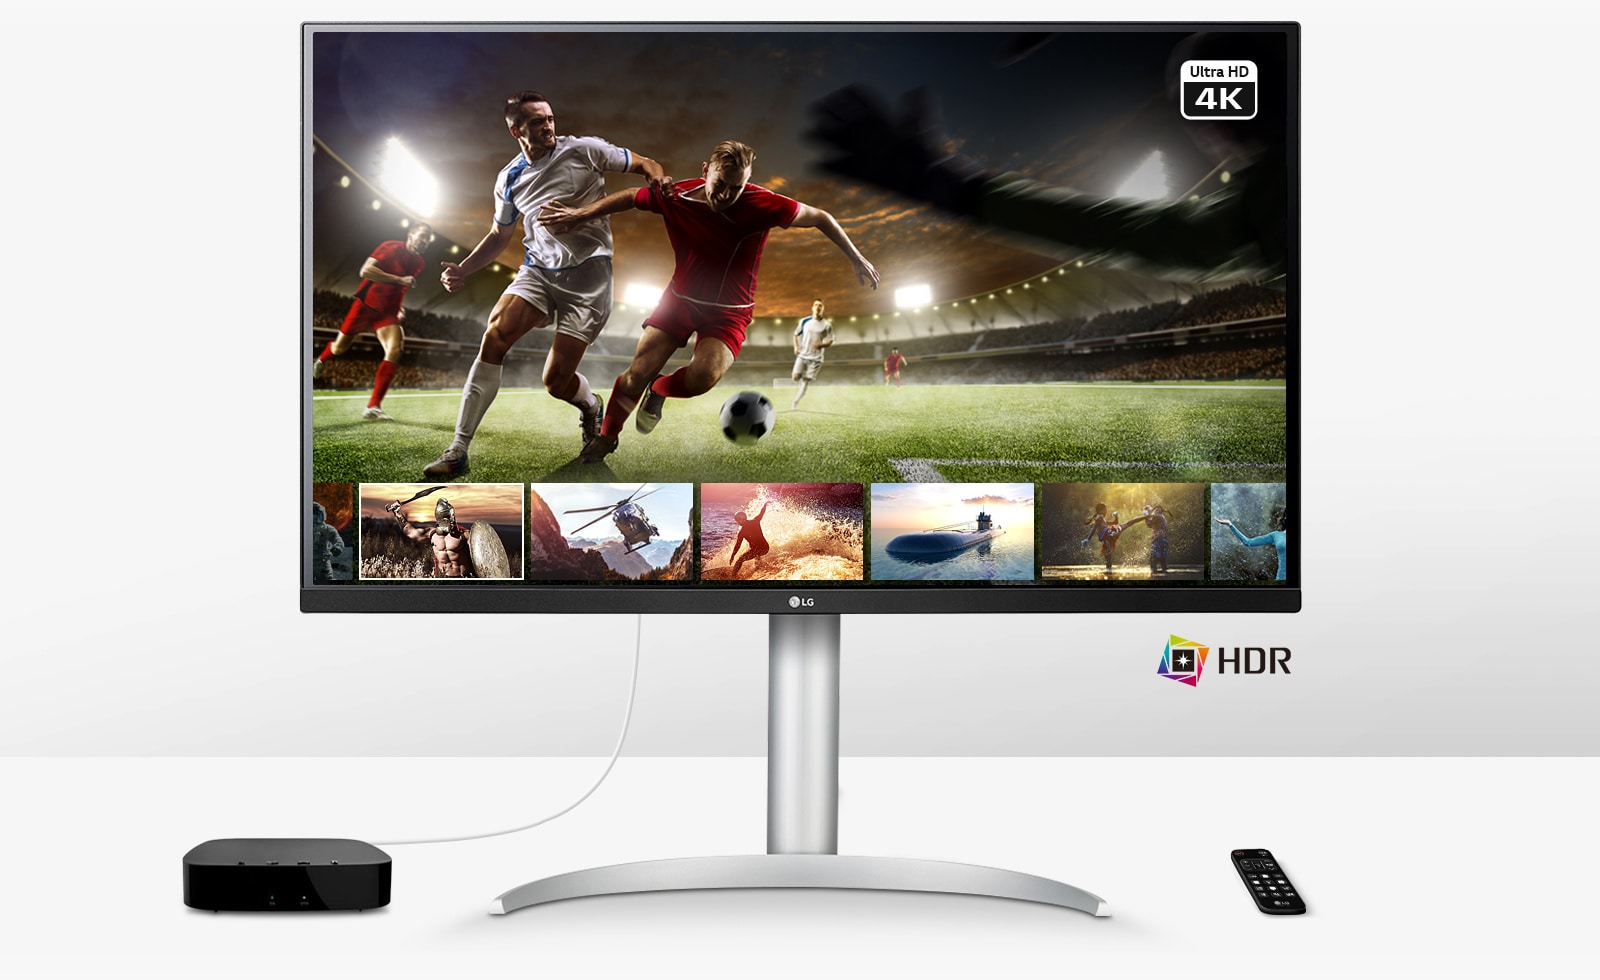 משחק כדורגל בשידור חי באיכות Ultra HD 4K HDR דרך שירות ההזרמה